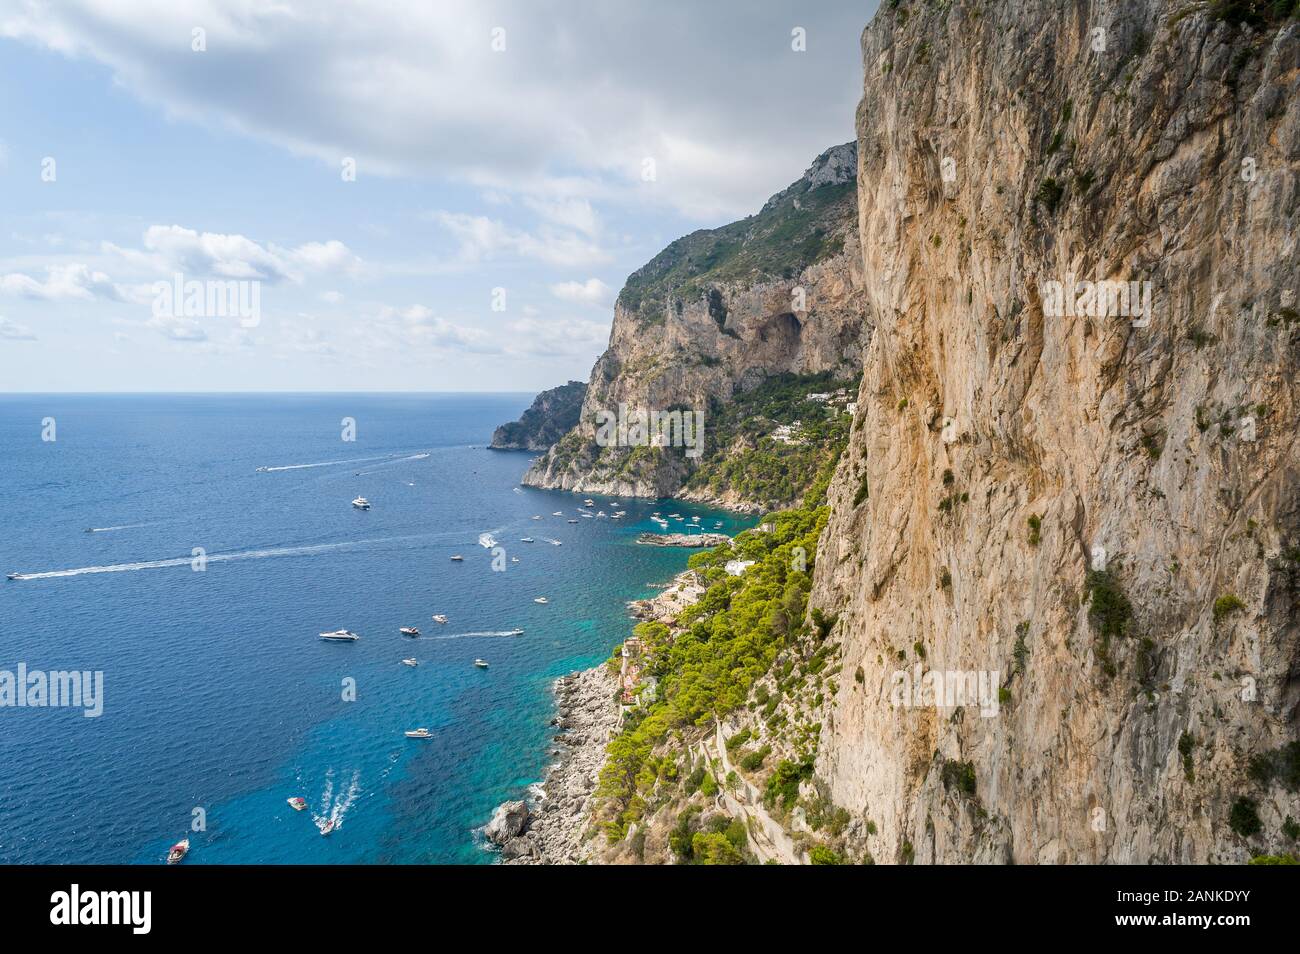 Felsen und Klippen der Insel Capri. Sicht auf das Meer der Bucht mit kleinen lokalen Boote und perfekte Kletterwände. Capri, Italien. Stockfoto